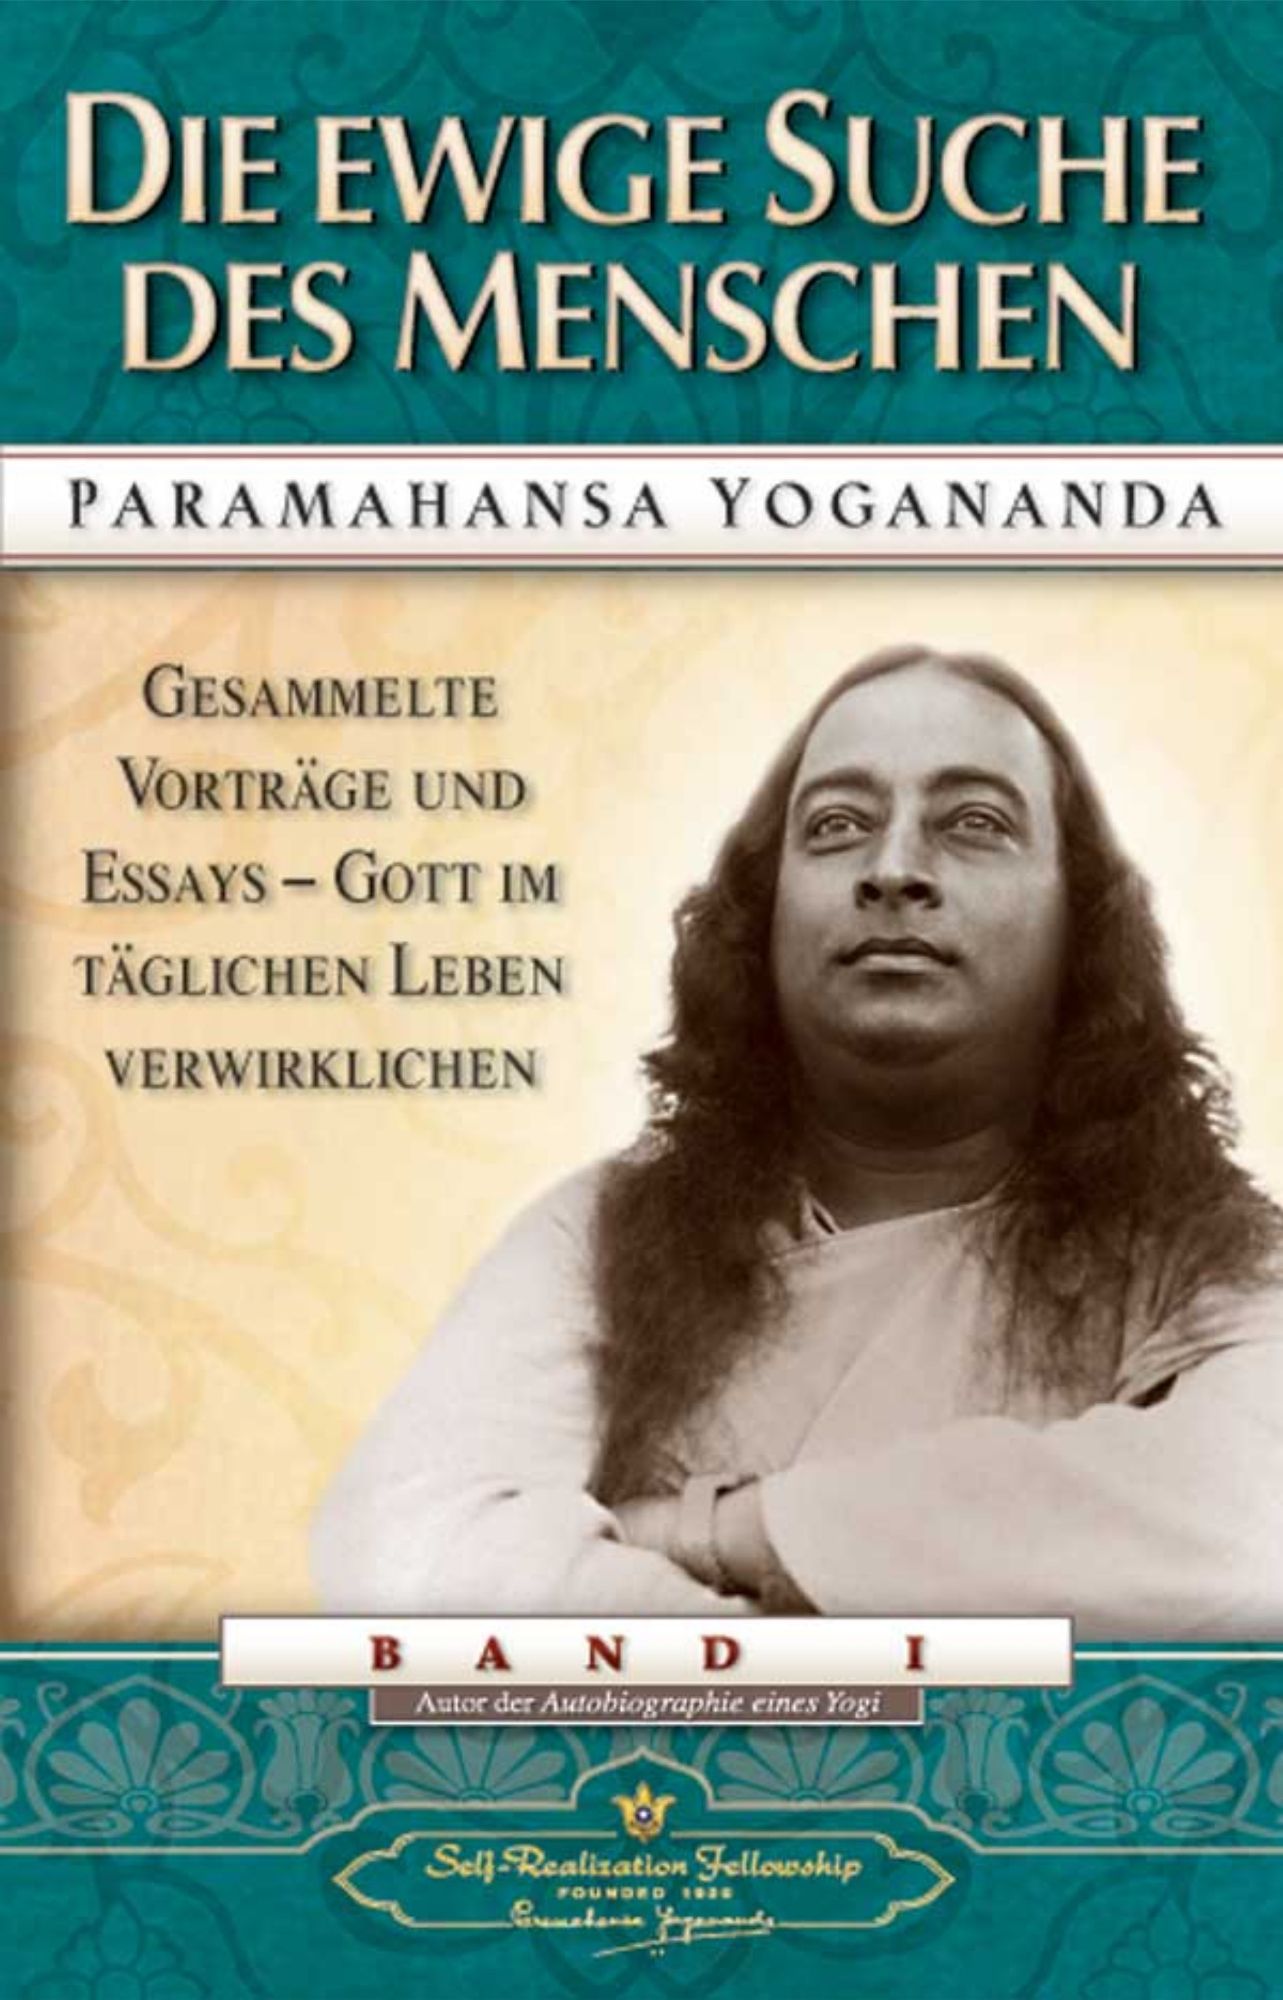 Die ewige Suche des Menschen, Paramahansa Yogananda